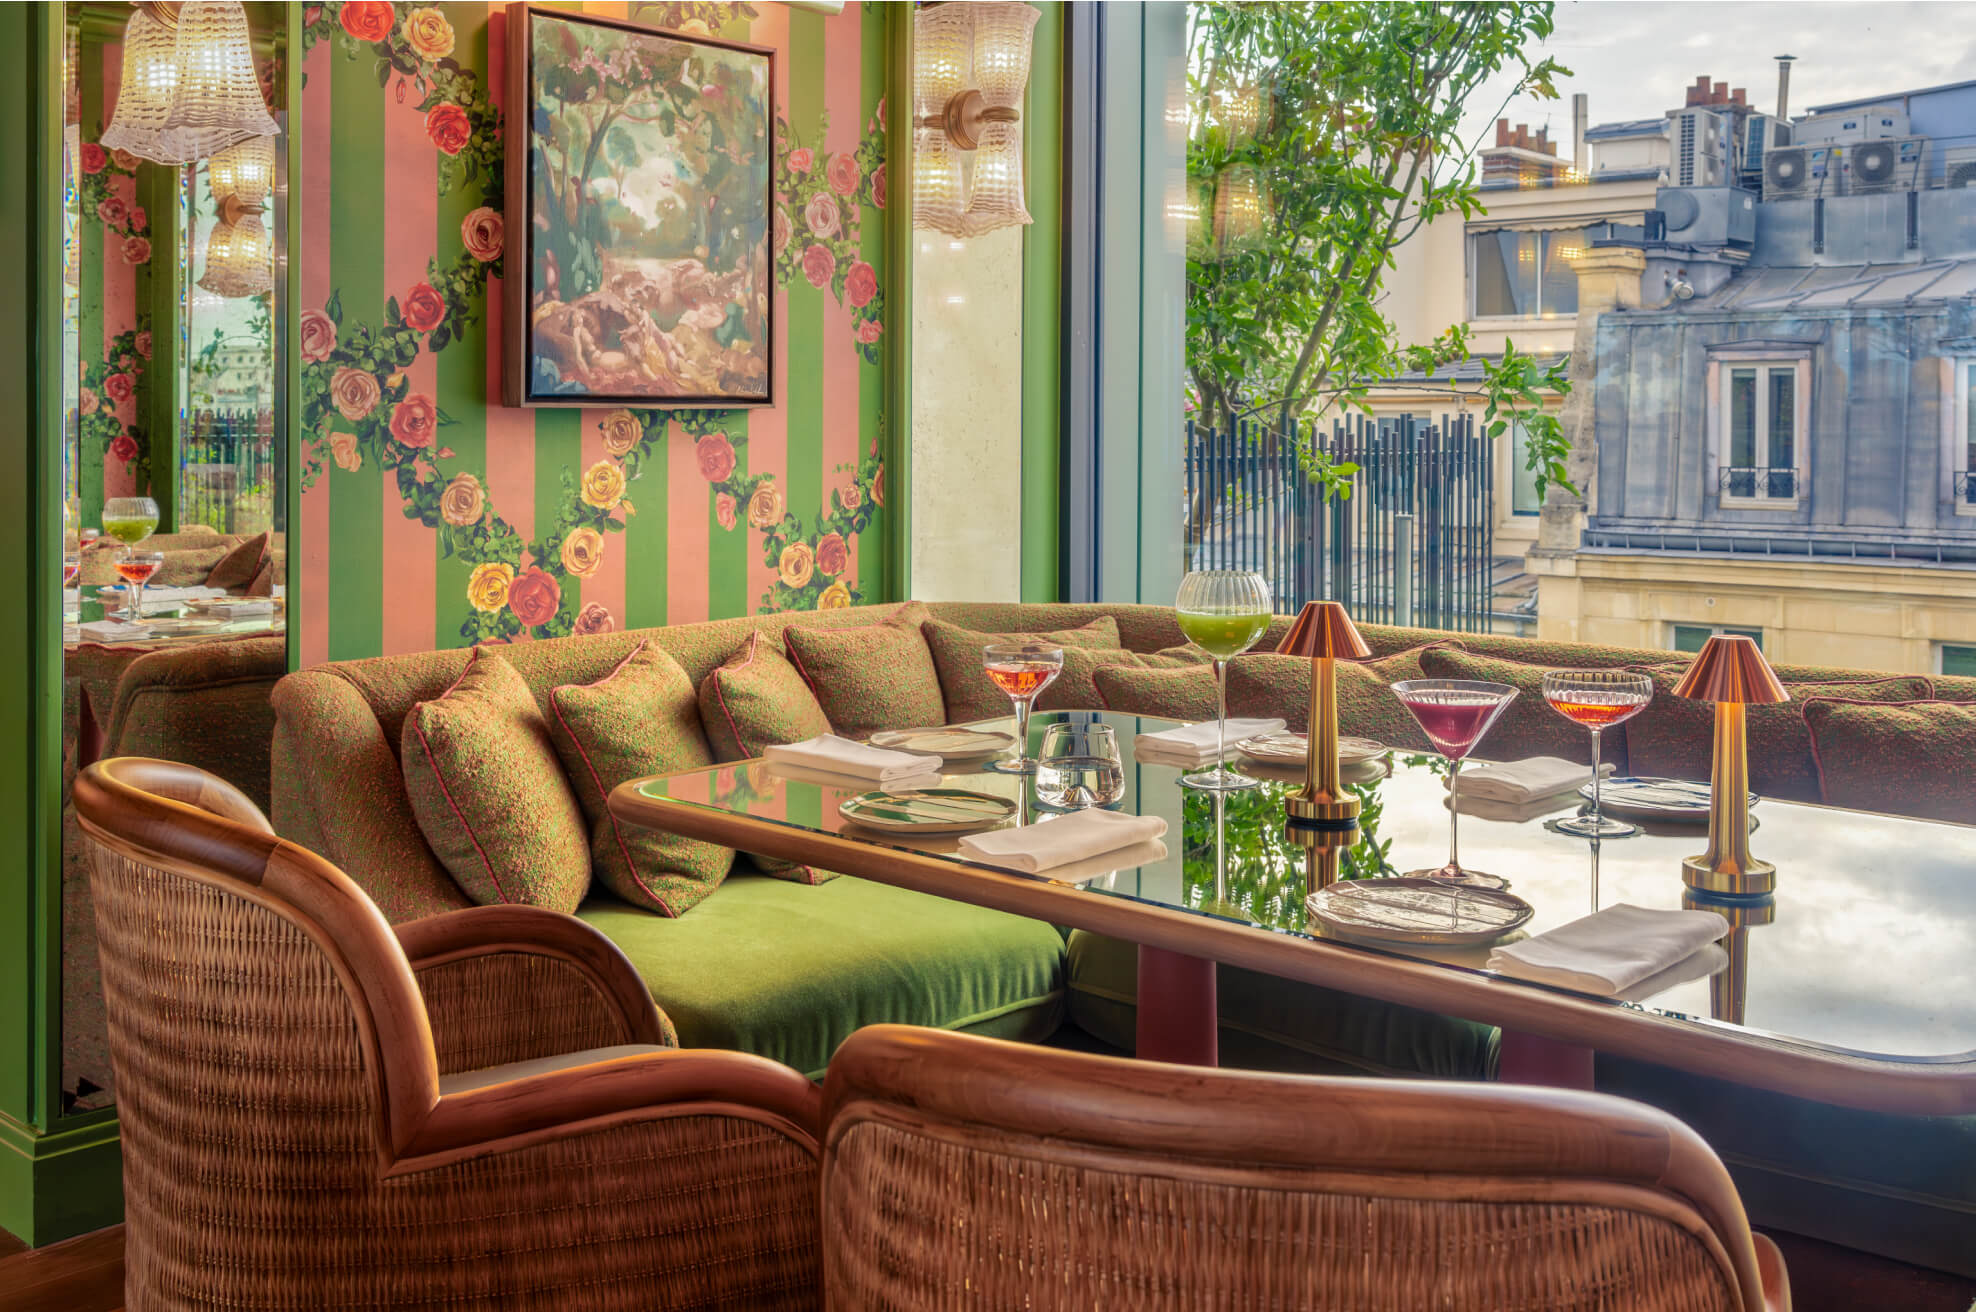 <p>Le Bar sur le Toit est le rooftop de <a href="https://www.admagazine.fr/galerie/la-fantaisie-hotel-rooftop-jardin-prive?mbid=synd_msn_rss&utm_source=msn&utm_medium=syndication">La Fantaisie</a>, un des derniers hôtels réalisés par Martin Brudnizki. Dans un décor élégant et fleuri, on déguste des cocktails colorés d'inspiration californienne et de savoureuses assiettes à partager — l'ensemble signé par la cheffe franco-américaine étoilée Dominique Crenn.</p> <p><strong>Ouvert dès à présent.</strong> Sans réservation. Cocktails à partir de 19 euros. Verres de vin à partir de 12 euros.</p> <p>24, rue Cadet, 75009 Paris.</p> <div class="callout"><p><a href="https://fr.lafantaisie.com/restaurants#bar-sur-le-toit" title="En savoir plus">En savoir plus</a></p> </div><p>Recevez les meilleures infos sur la décoration, le design, l'art, l'architecture et l'art de vivre directement par e-mail.</p><a href="https://newsletter.admagazine.fr?sourceCode=msnsend">S'inscrire ici</a>